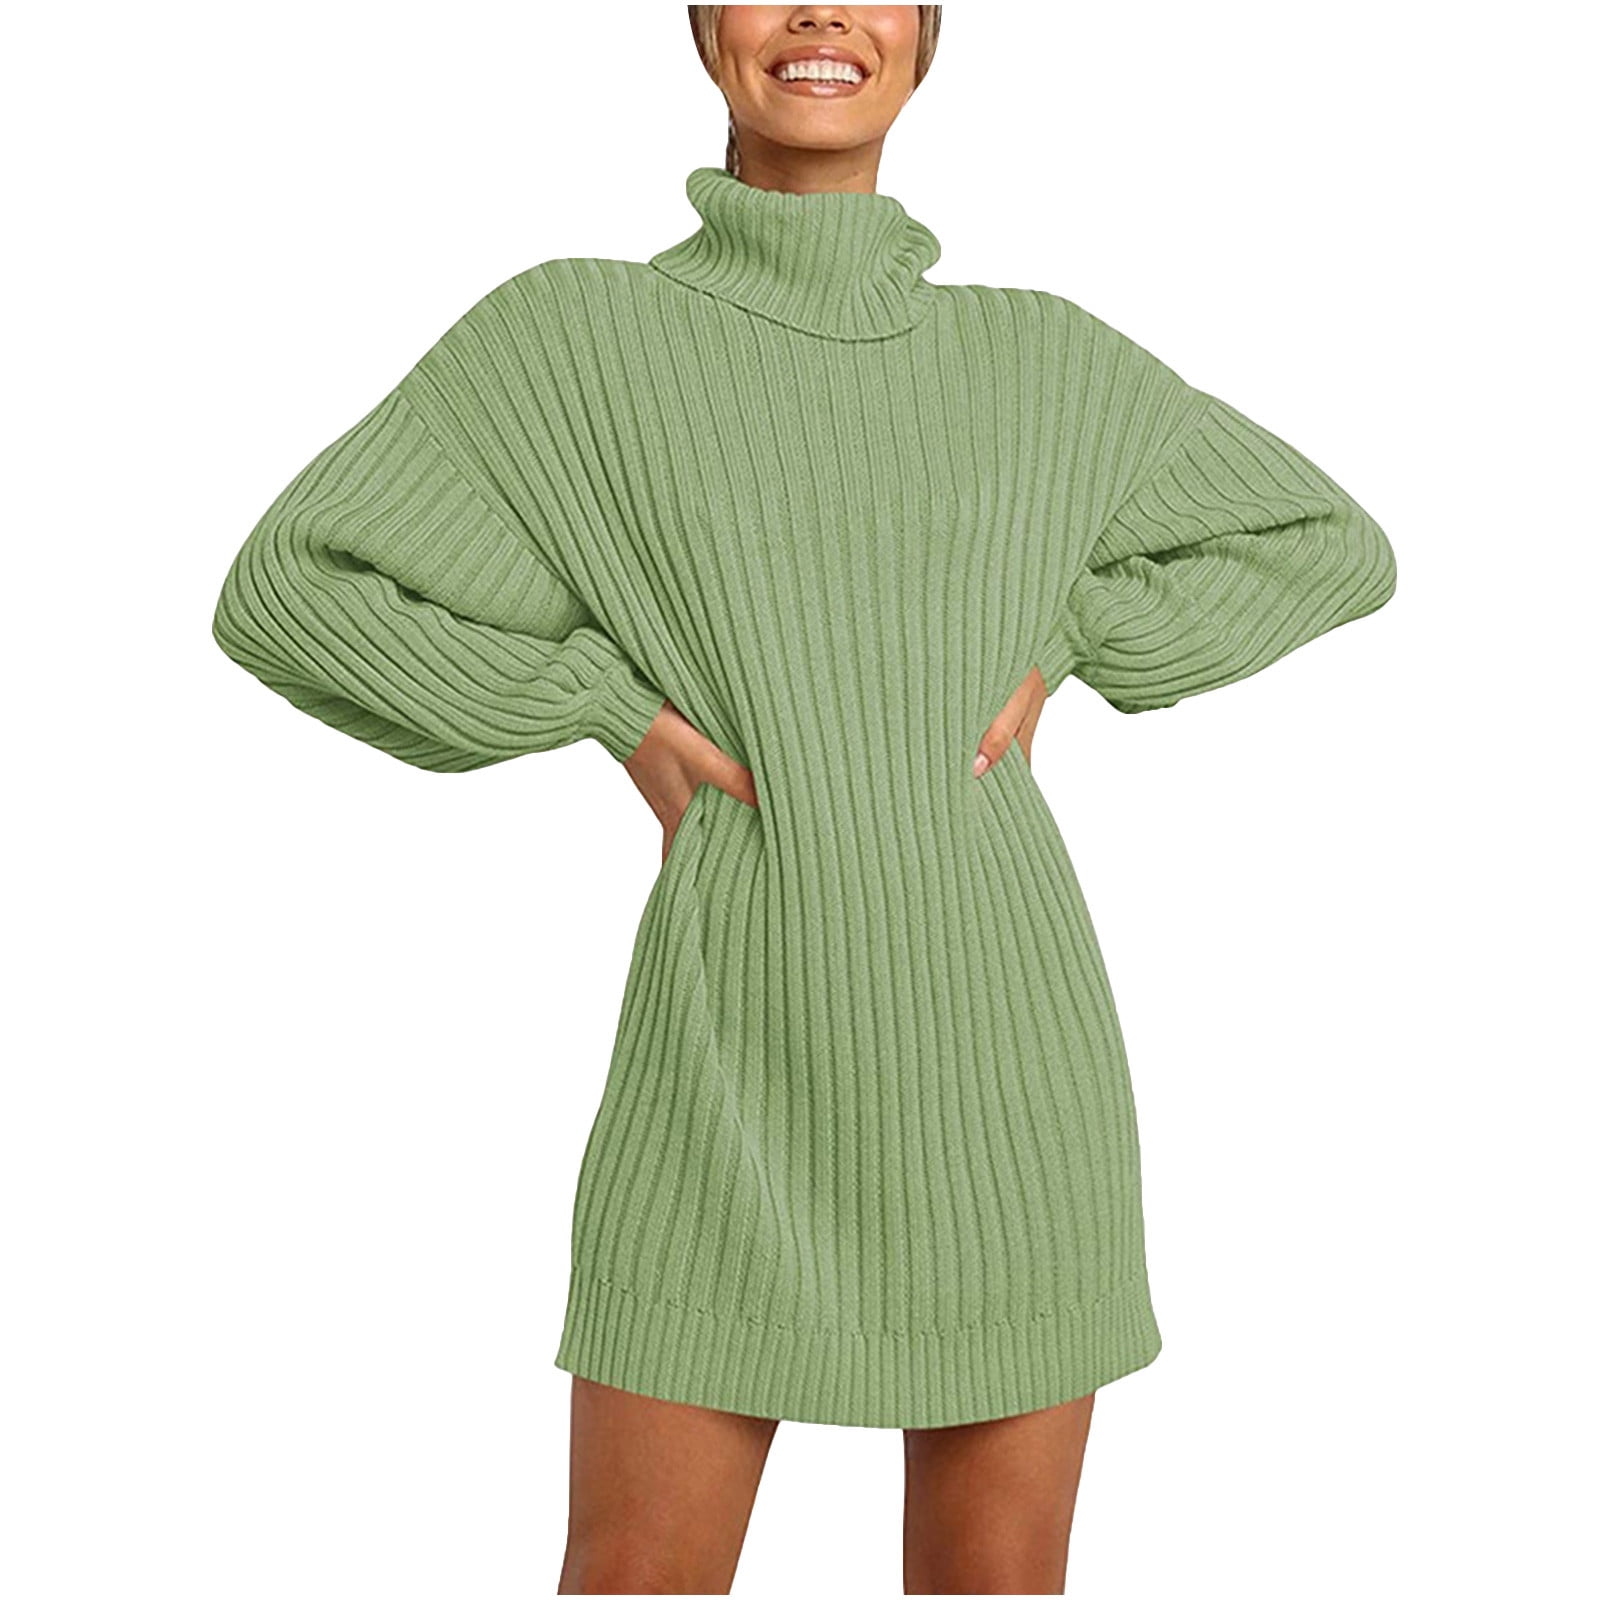 Ikevan Women Solid Long Sleeve Sweater ...